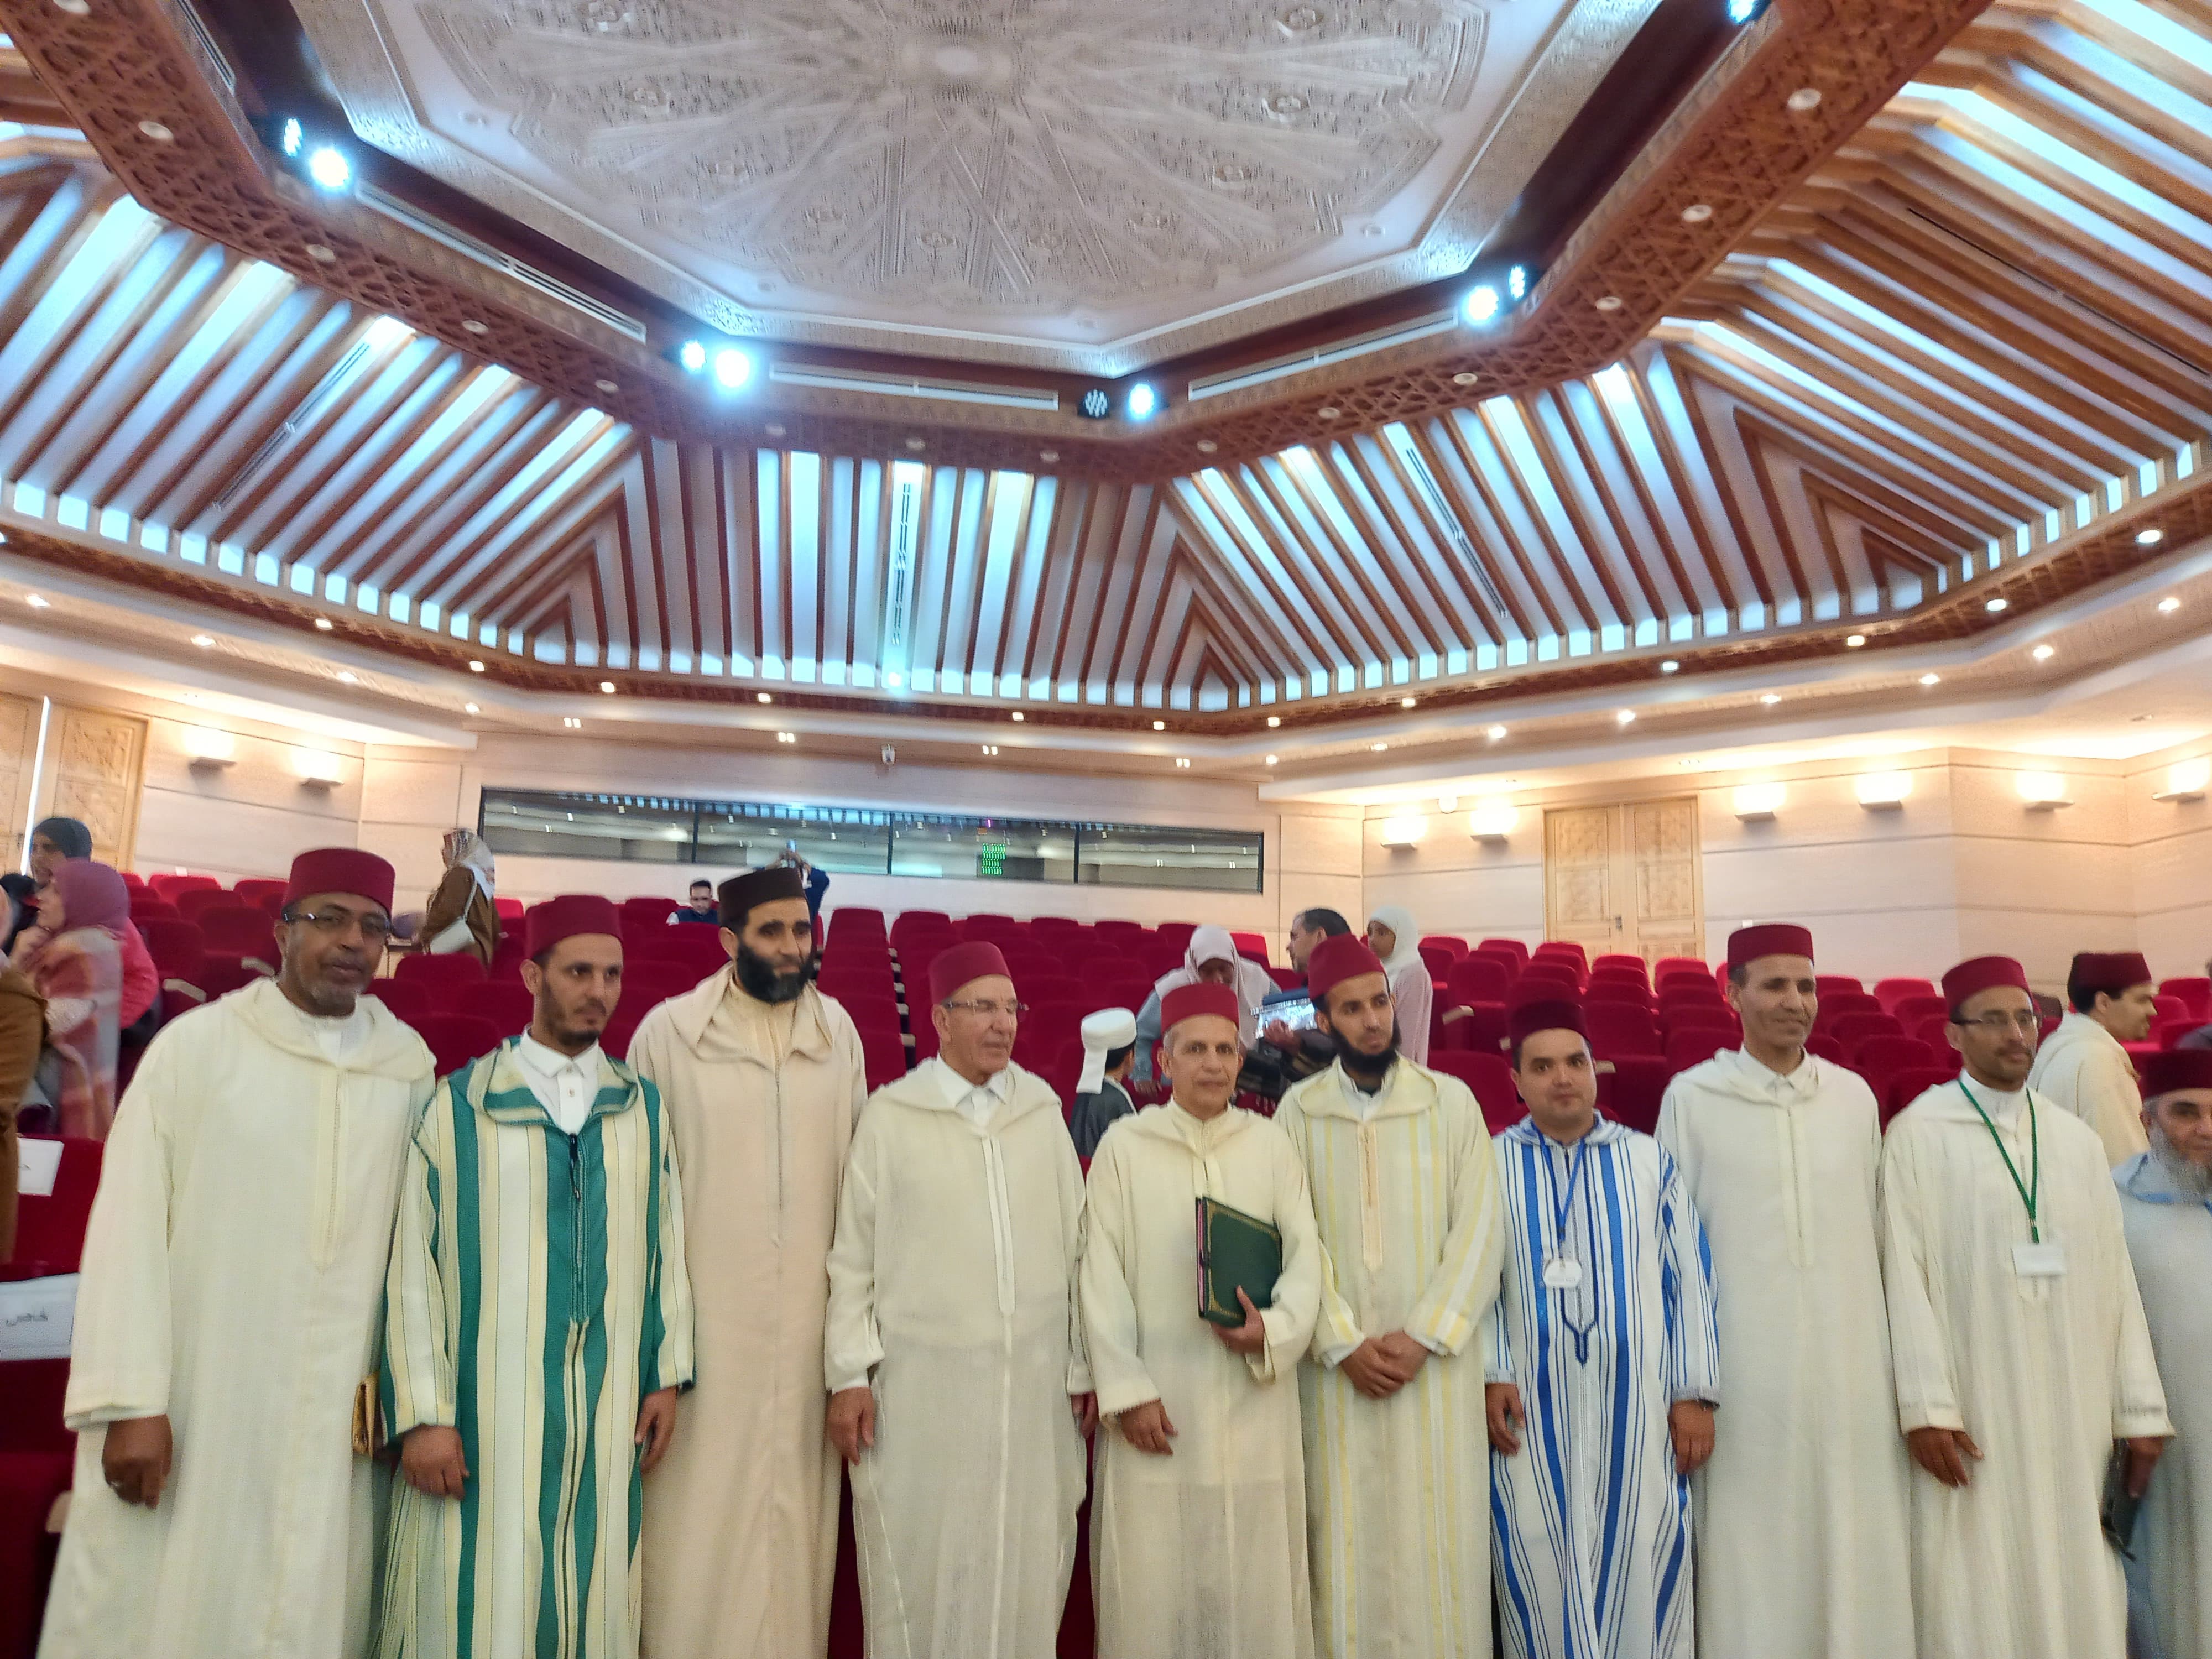  المجلس العلمي المحلي بسلا يُكَّرم حفظة القرآن والقيمين الدينيين بمناسبة فعاليات 